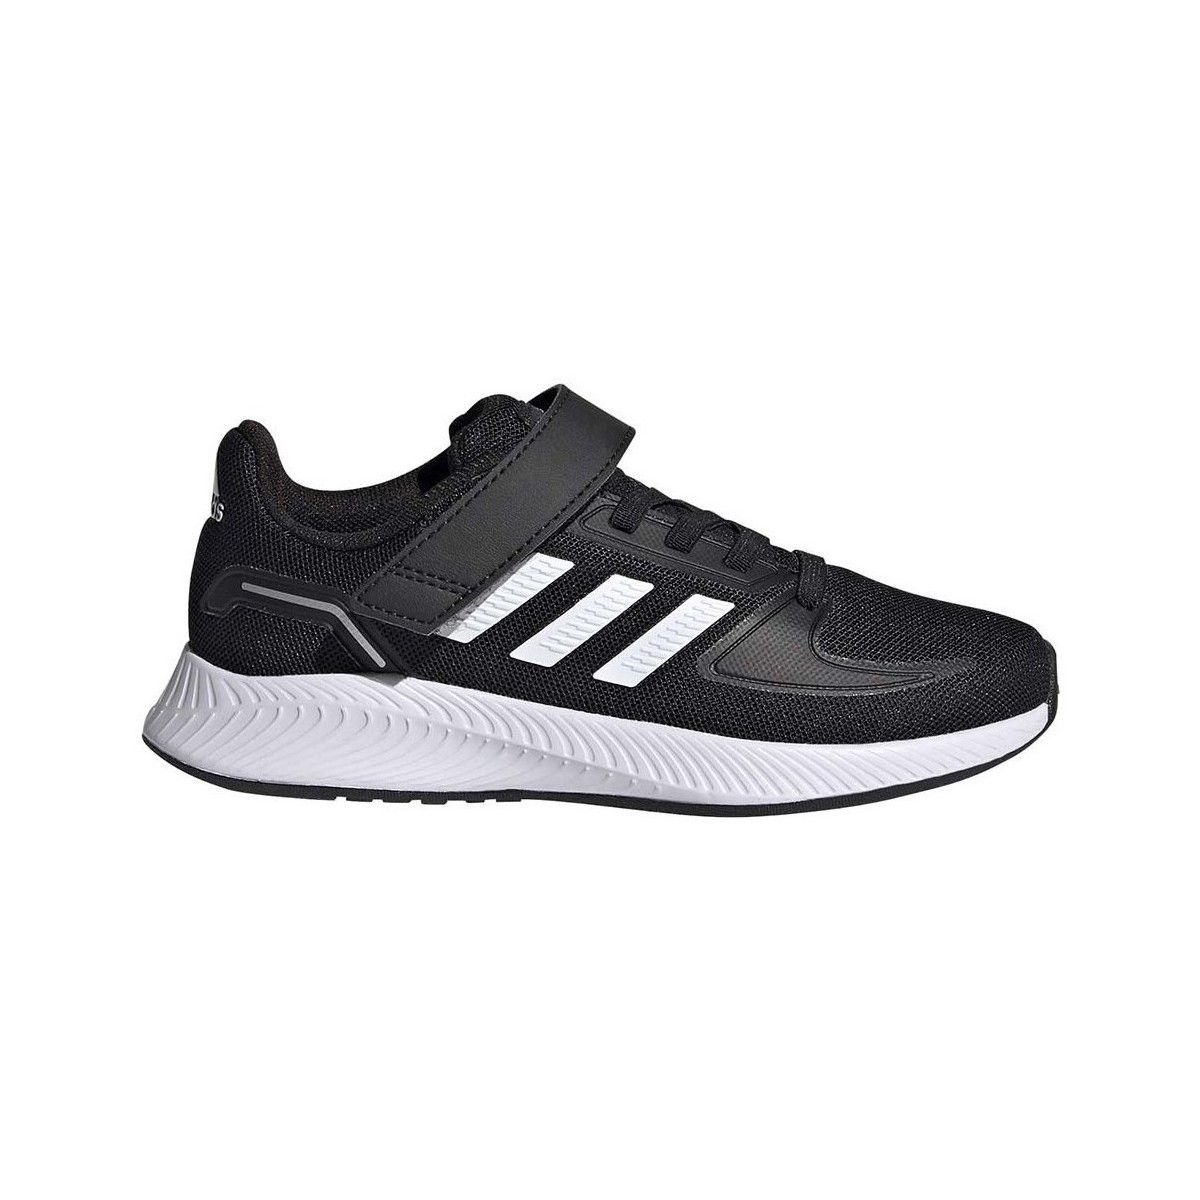 Sko Børn Lave sneakers adidas Originals Runfalcon 20 Sort